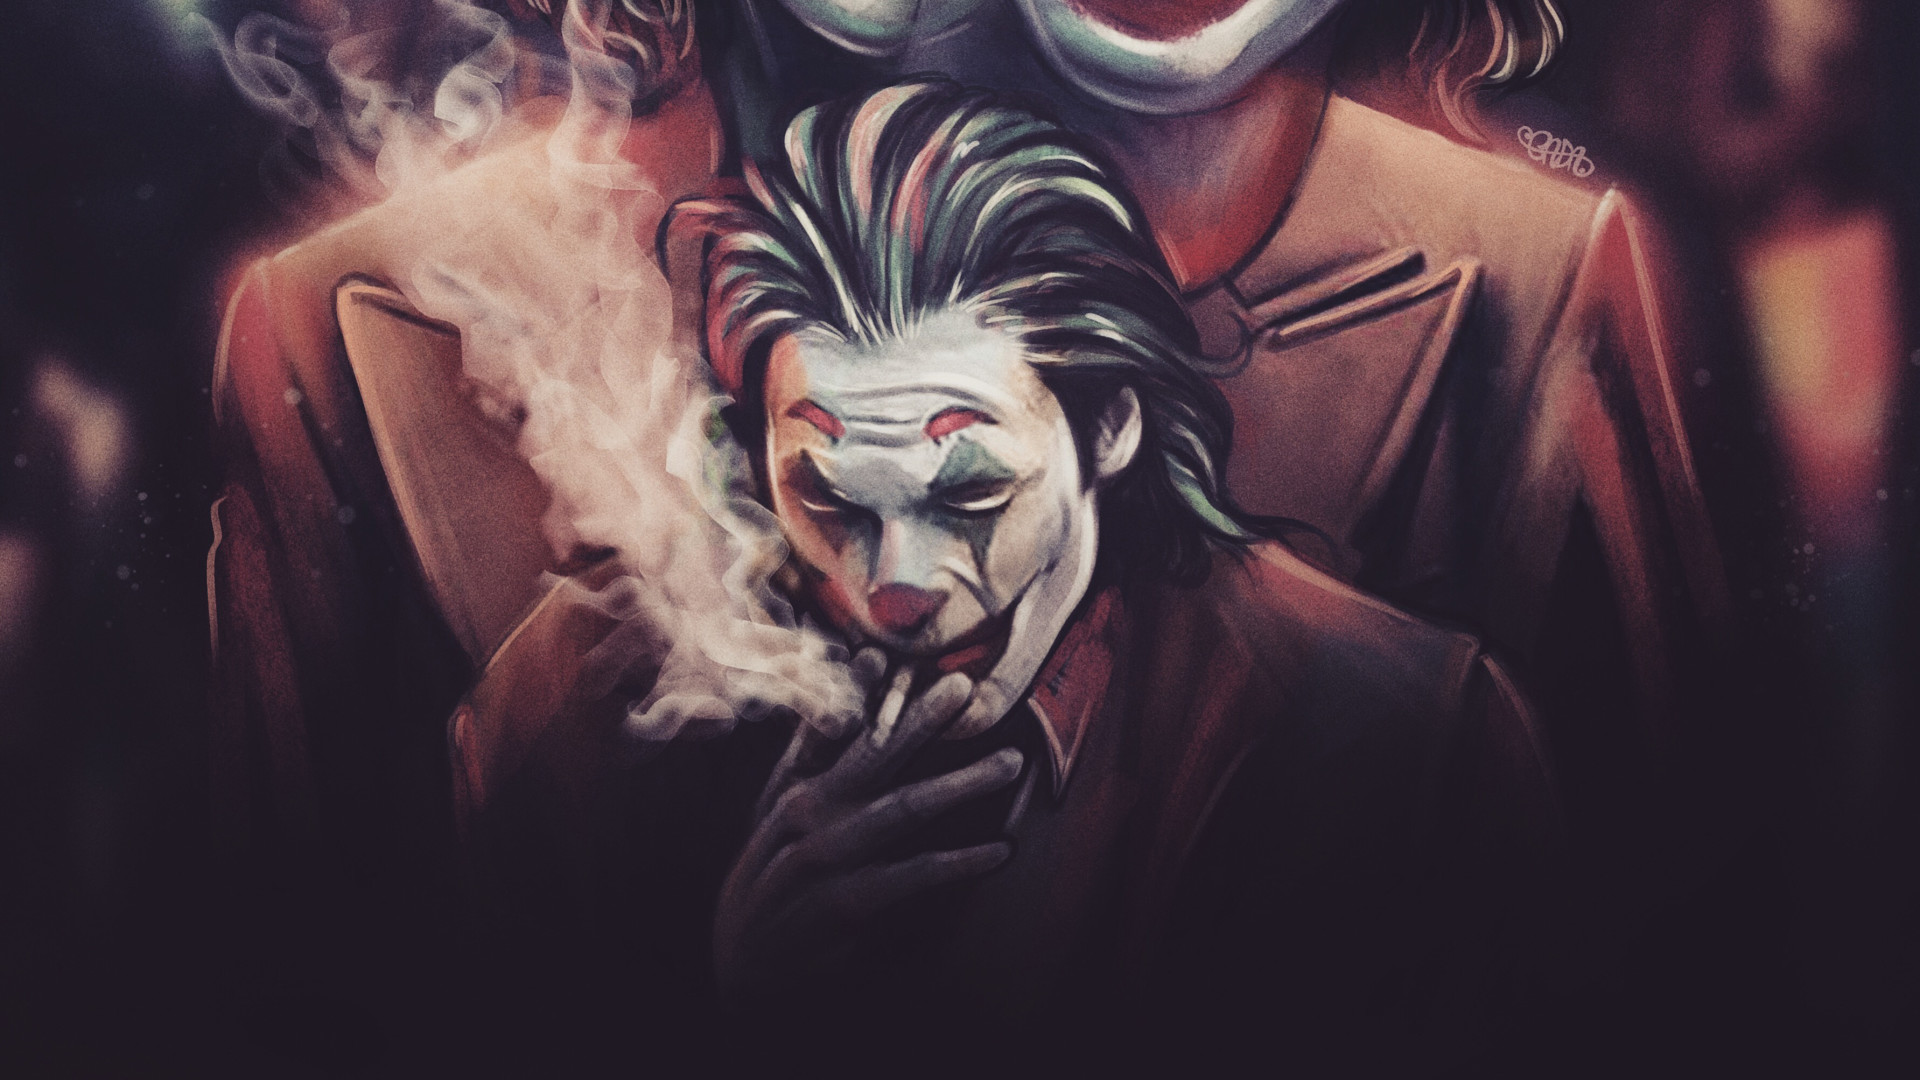 Smoke Joker Hd Wallpaper 2019 - HD Wallpaper 